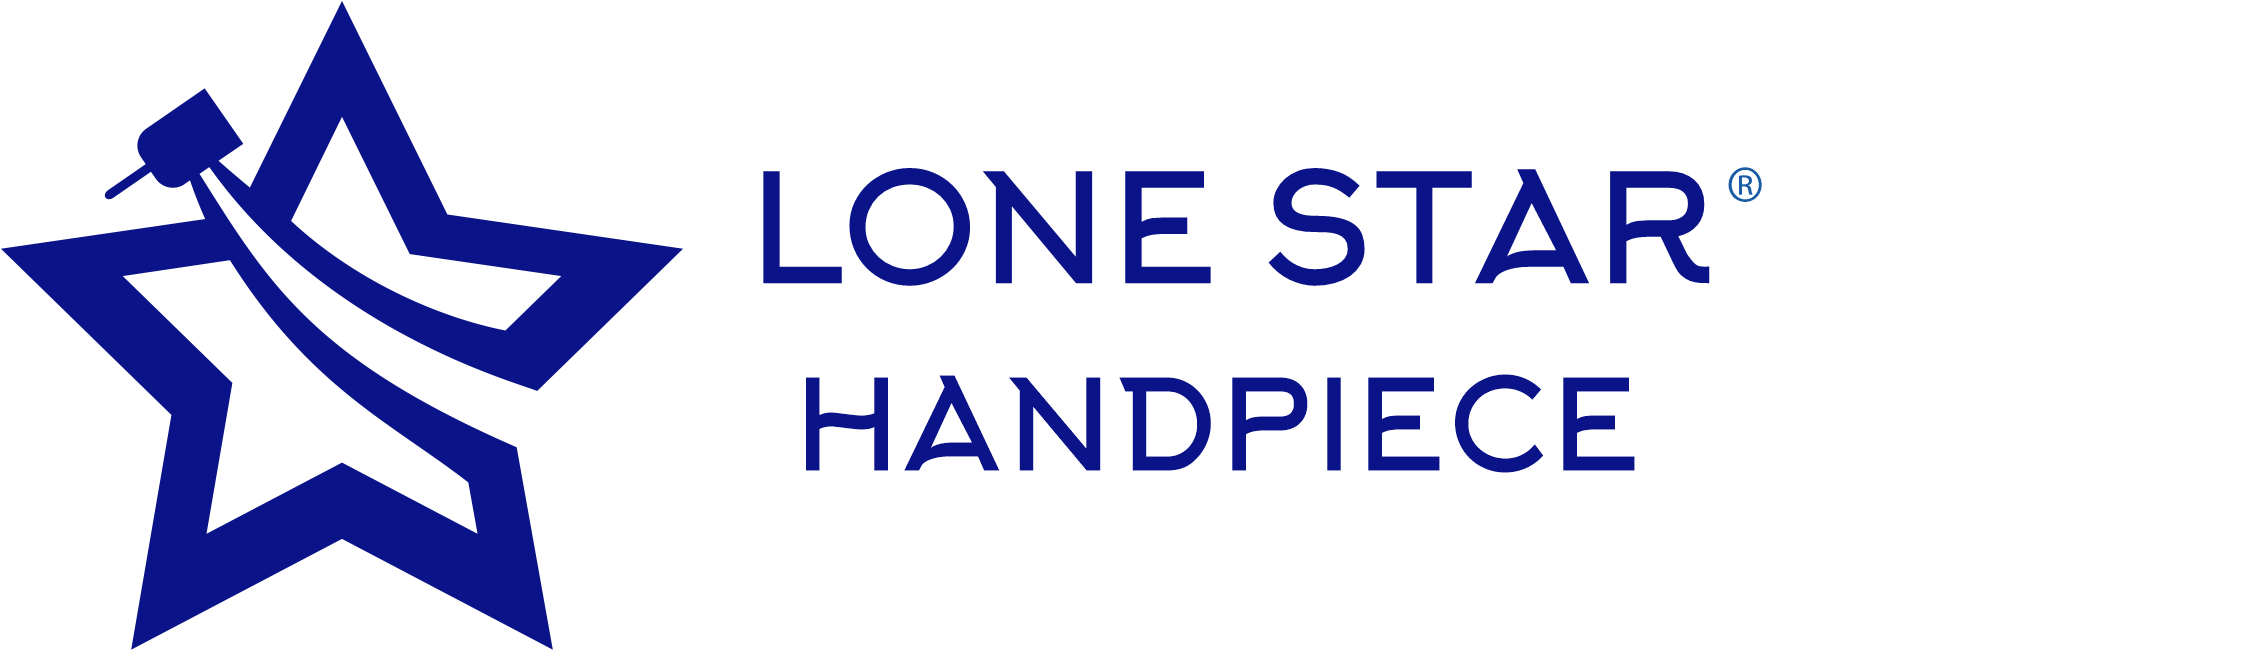 Lone Star Handpiece Logo